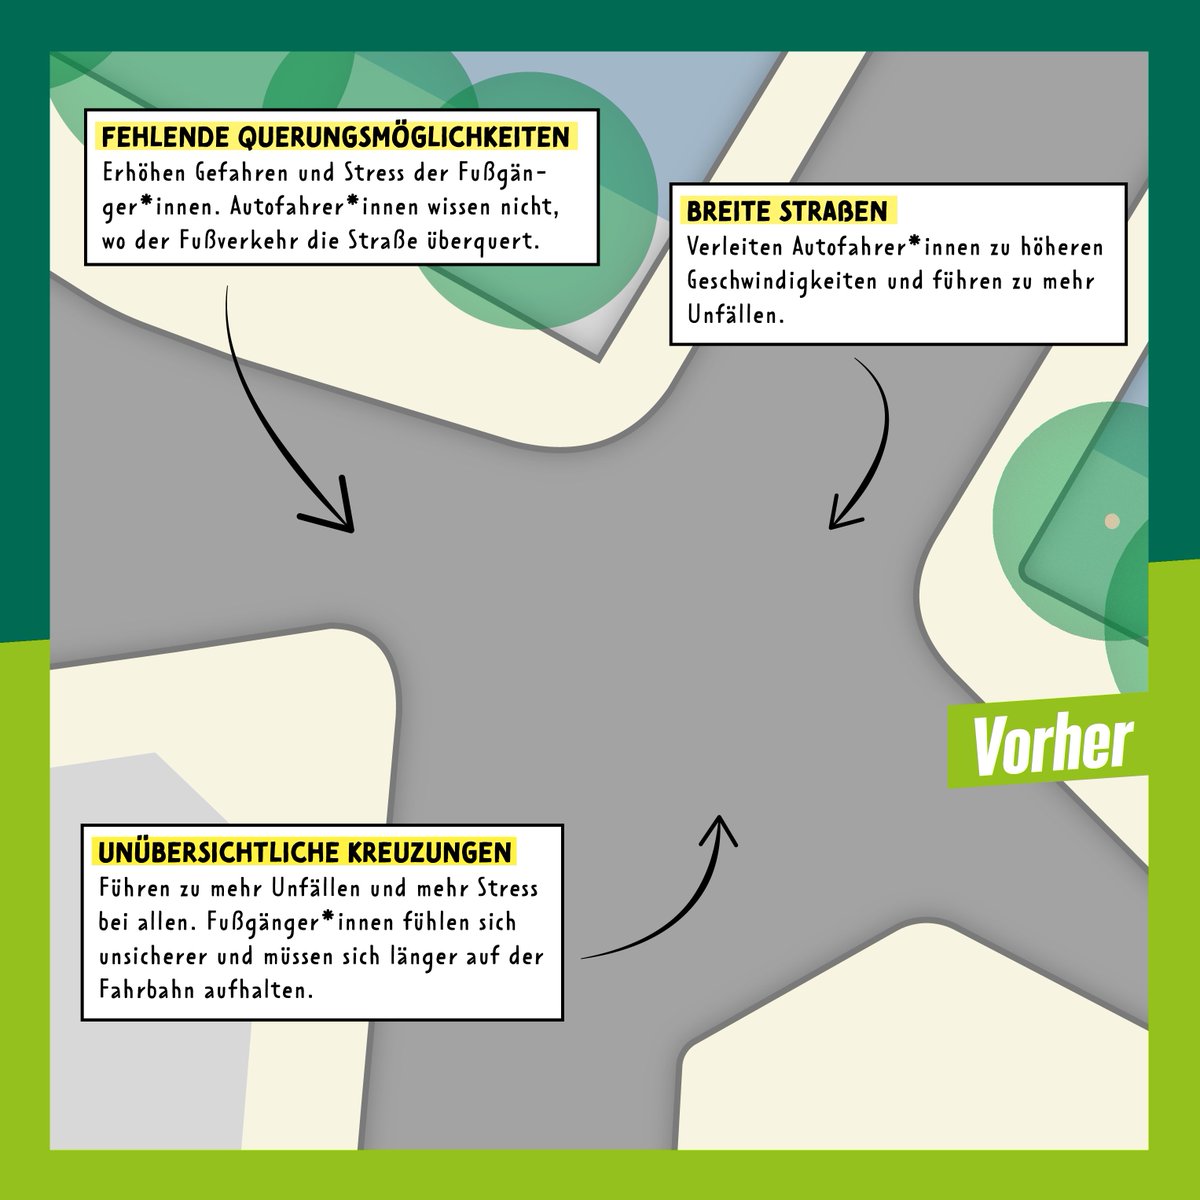 Schritt 2: Analyse
Das Wegenetz haben wir & @FixMyBerlin mit Straßenkarten abgeglichen